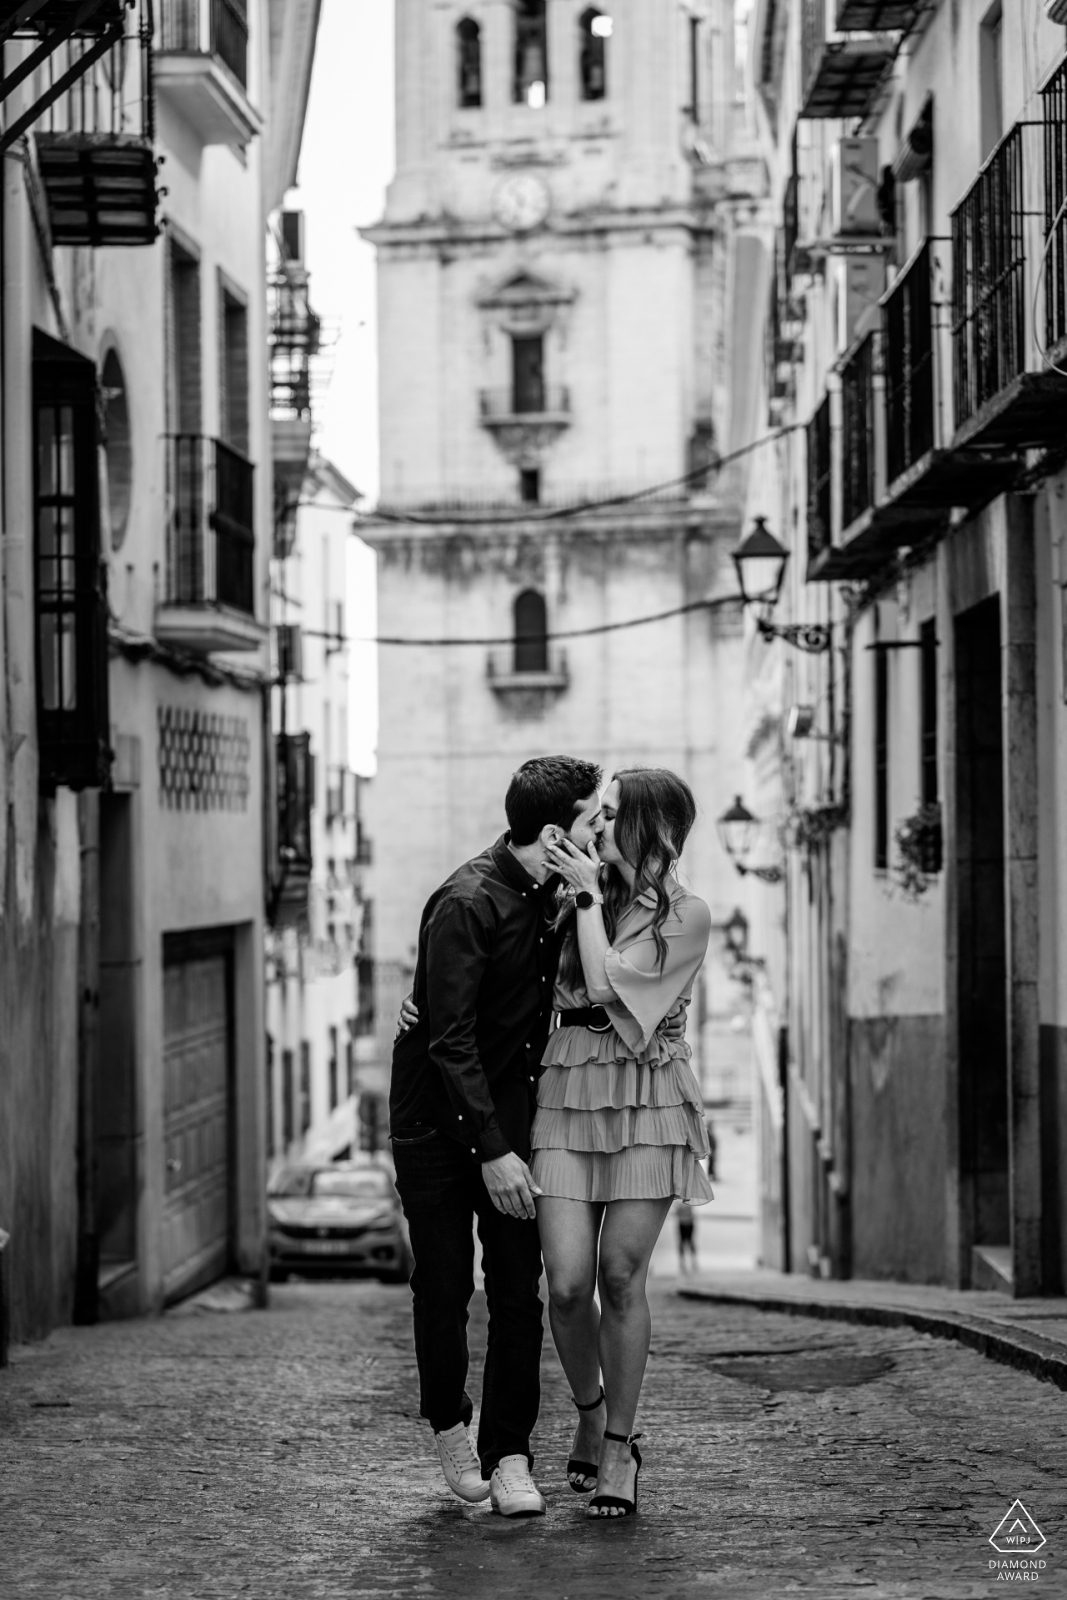 Fotografía en blanco y negro de una pareja besándose por las calles de una ciudad